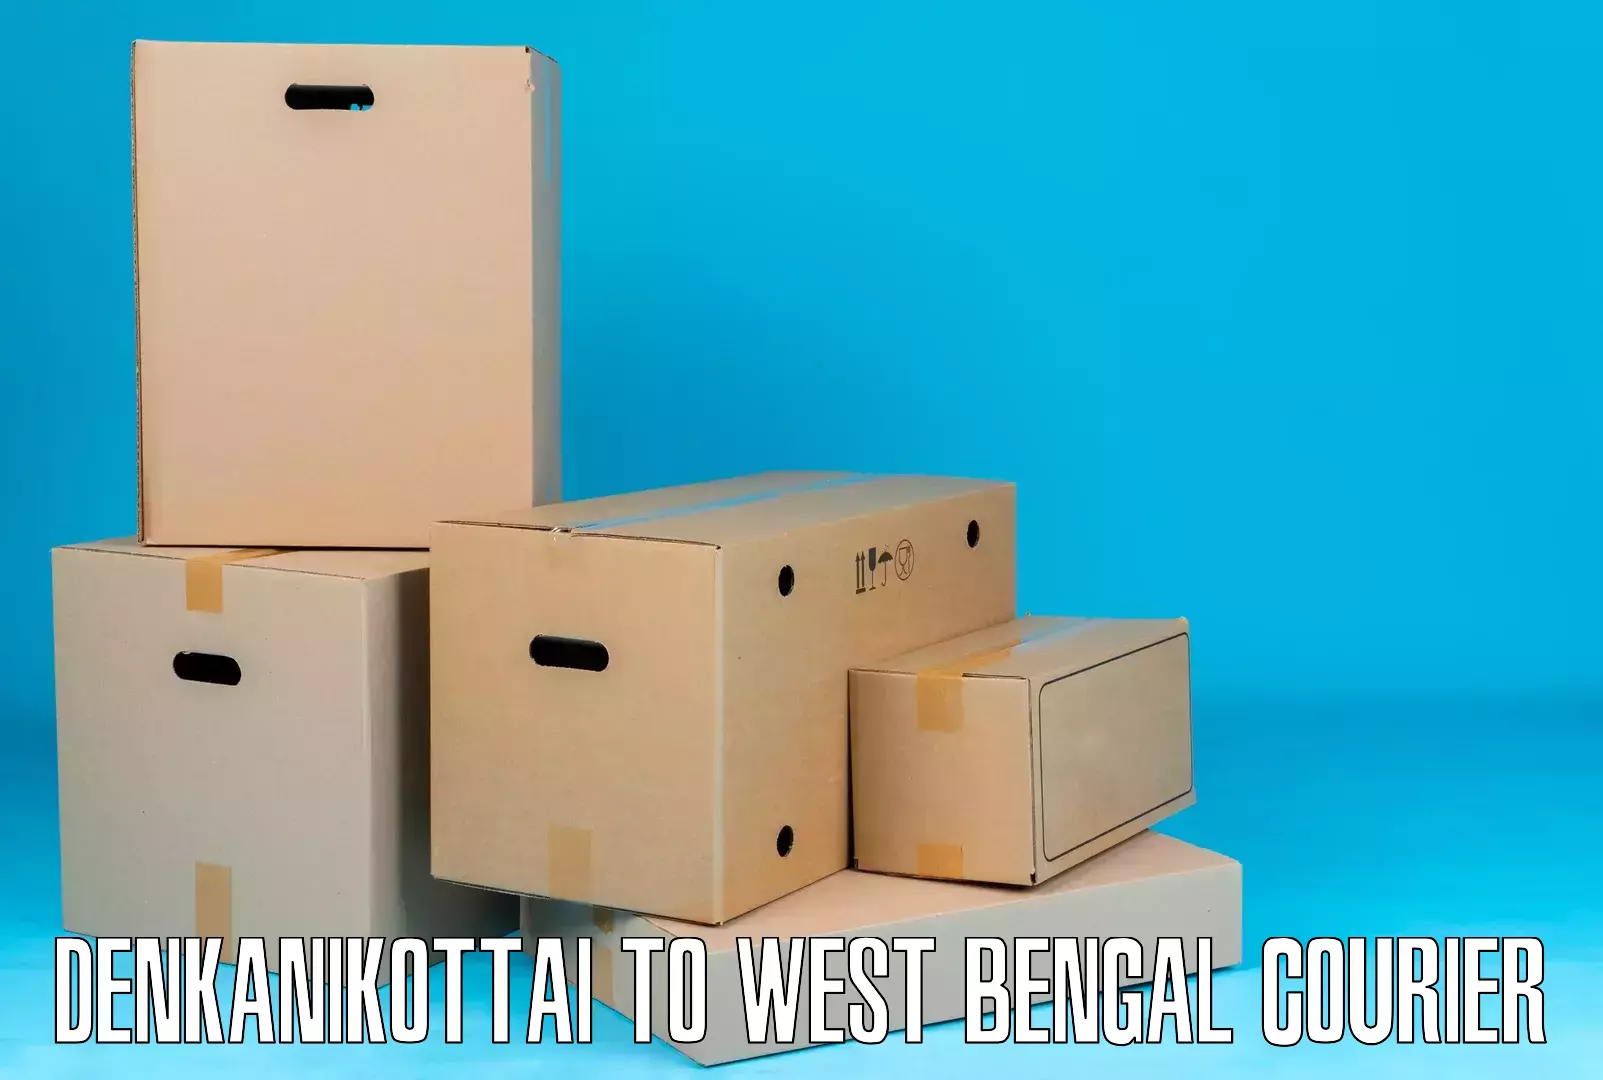 Reliable delivery network Denkanikottai to Sehara Bazar